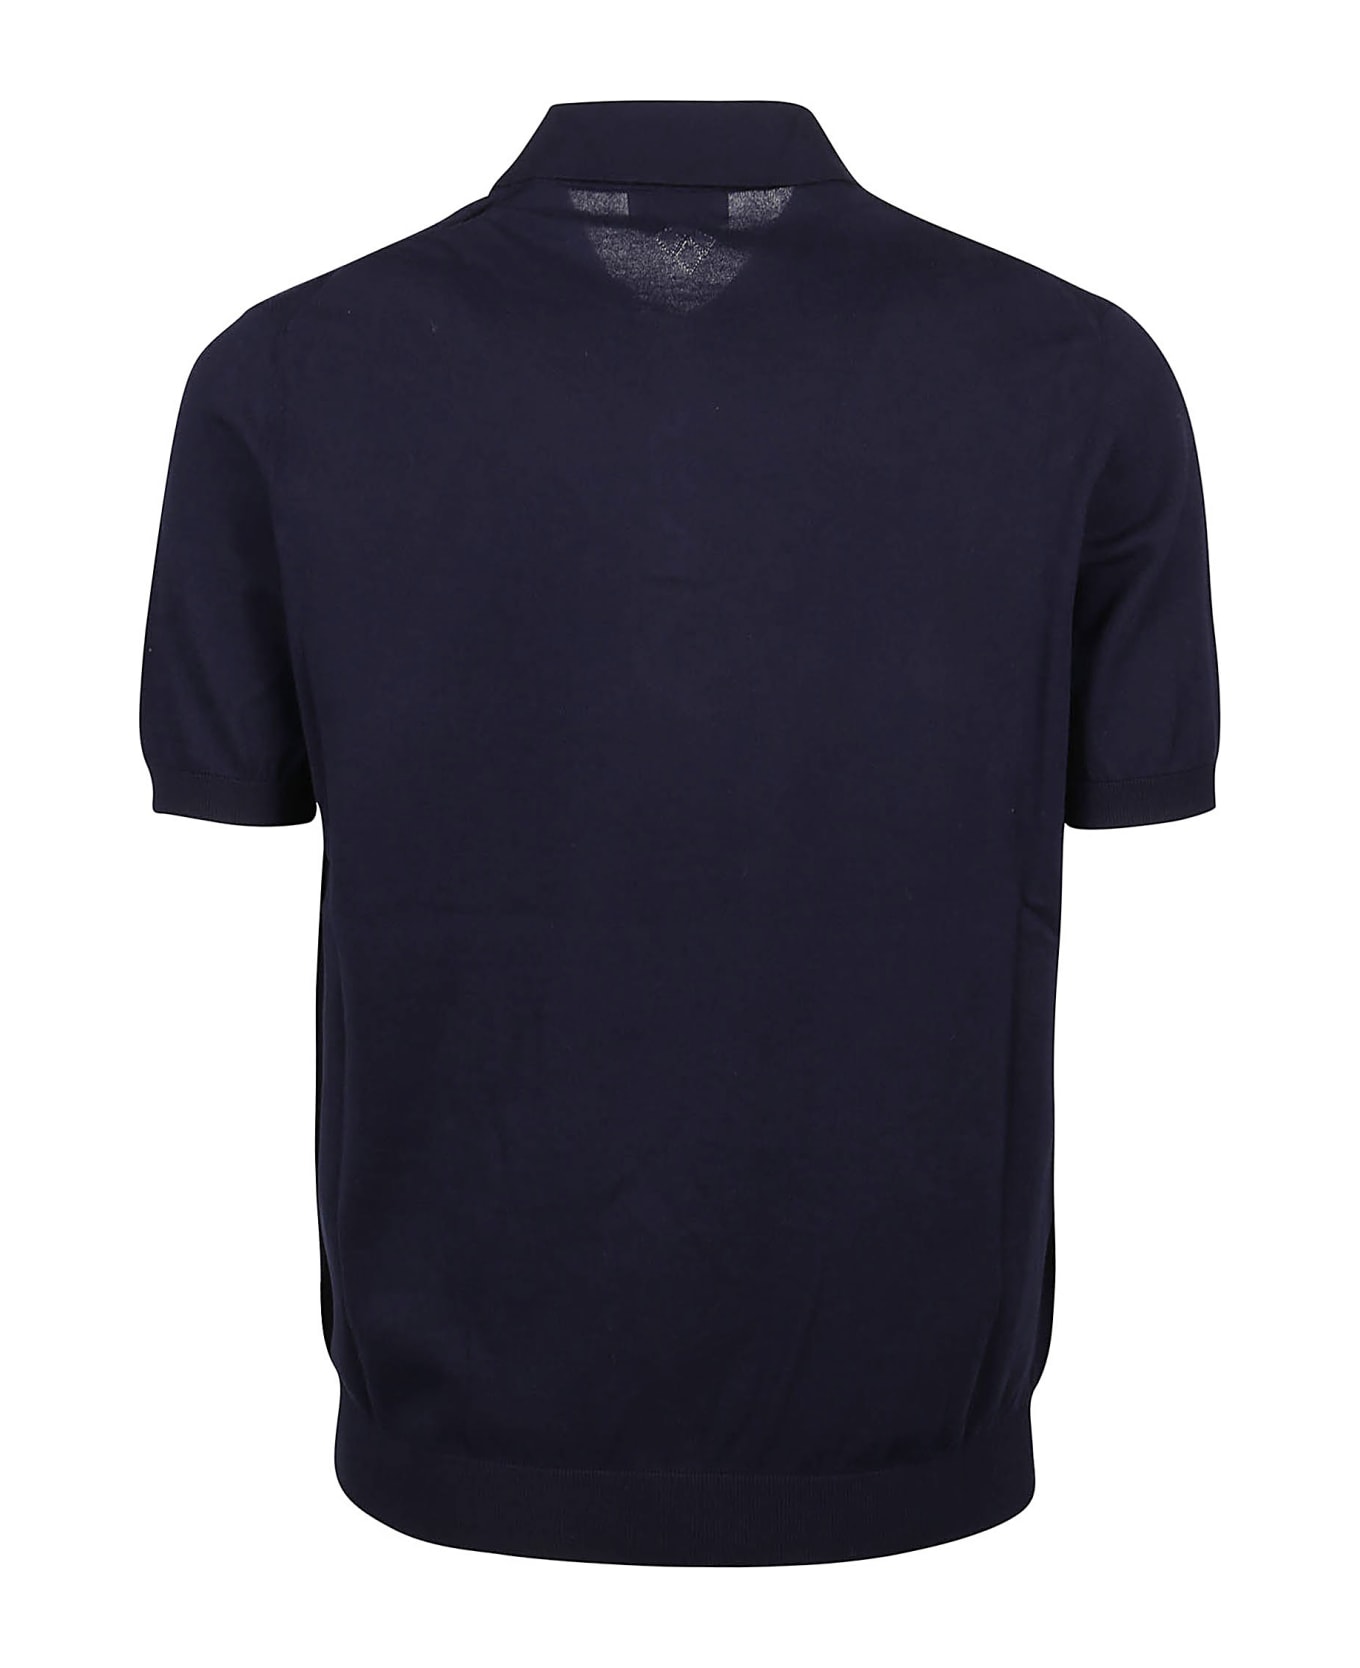 Ballantyne Short Sleeve Polo Shirt - Navy